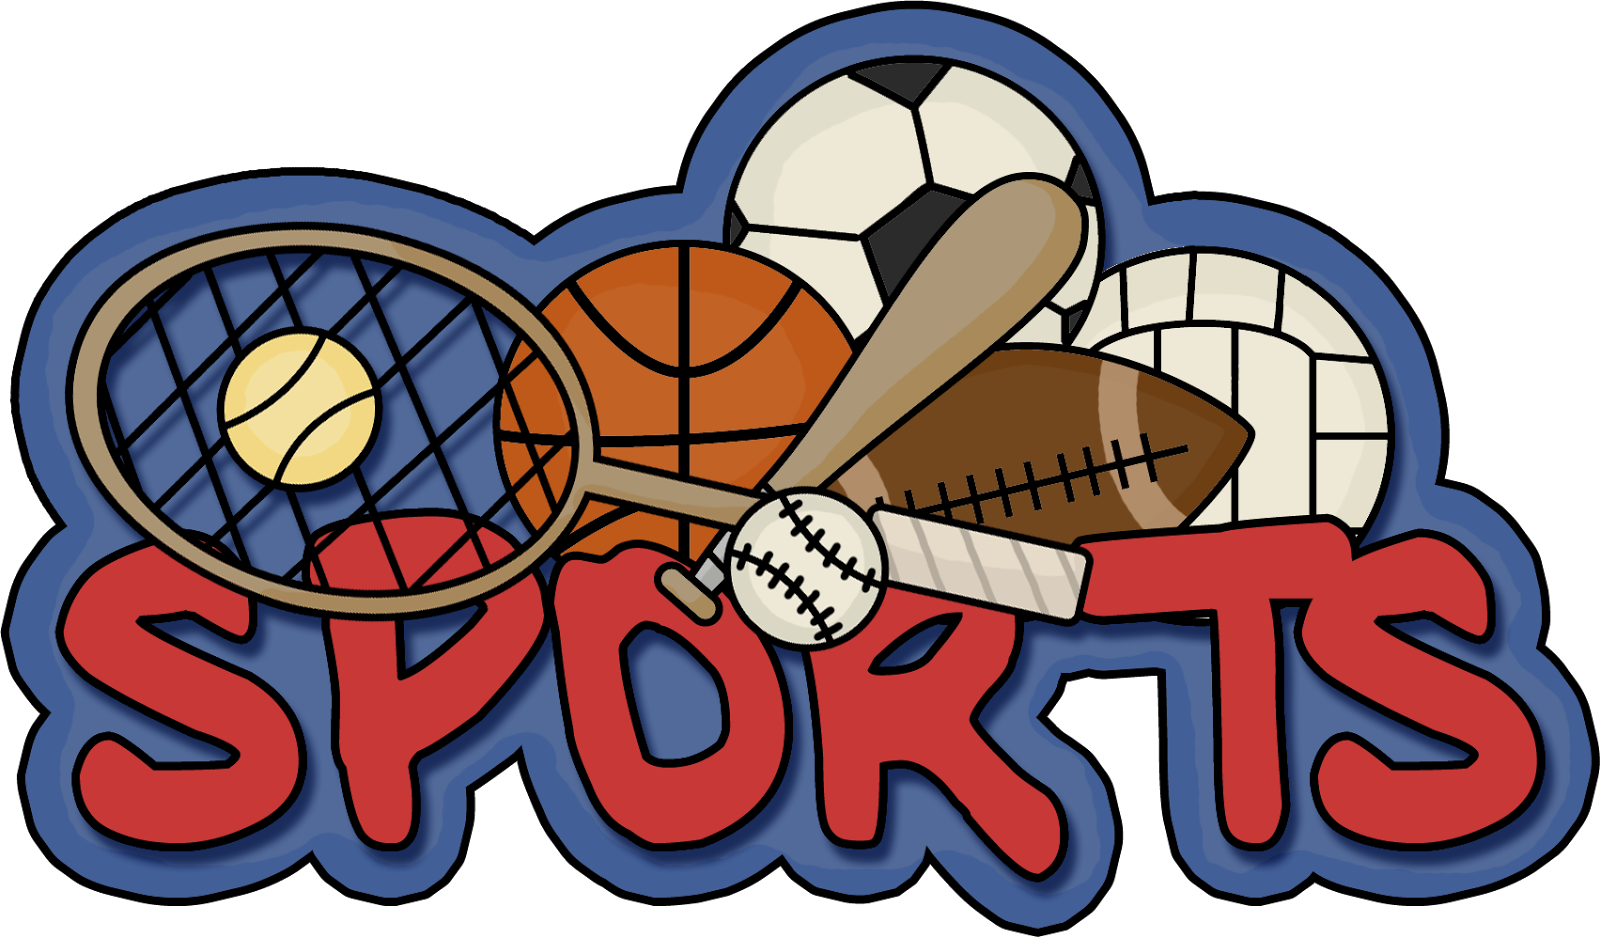 What sports games do you. Спортивные логотипы. Эмблемы спортивных товаров. Спорт слово. Спорт надпись.